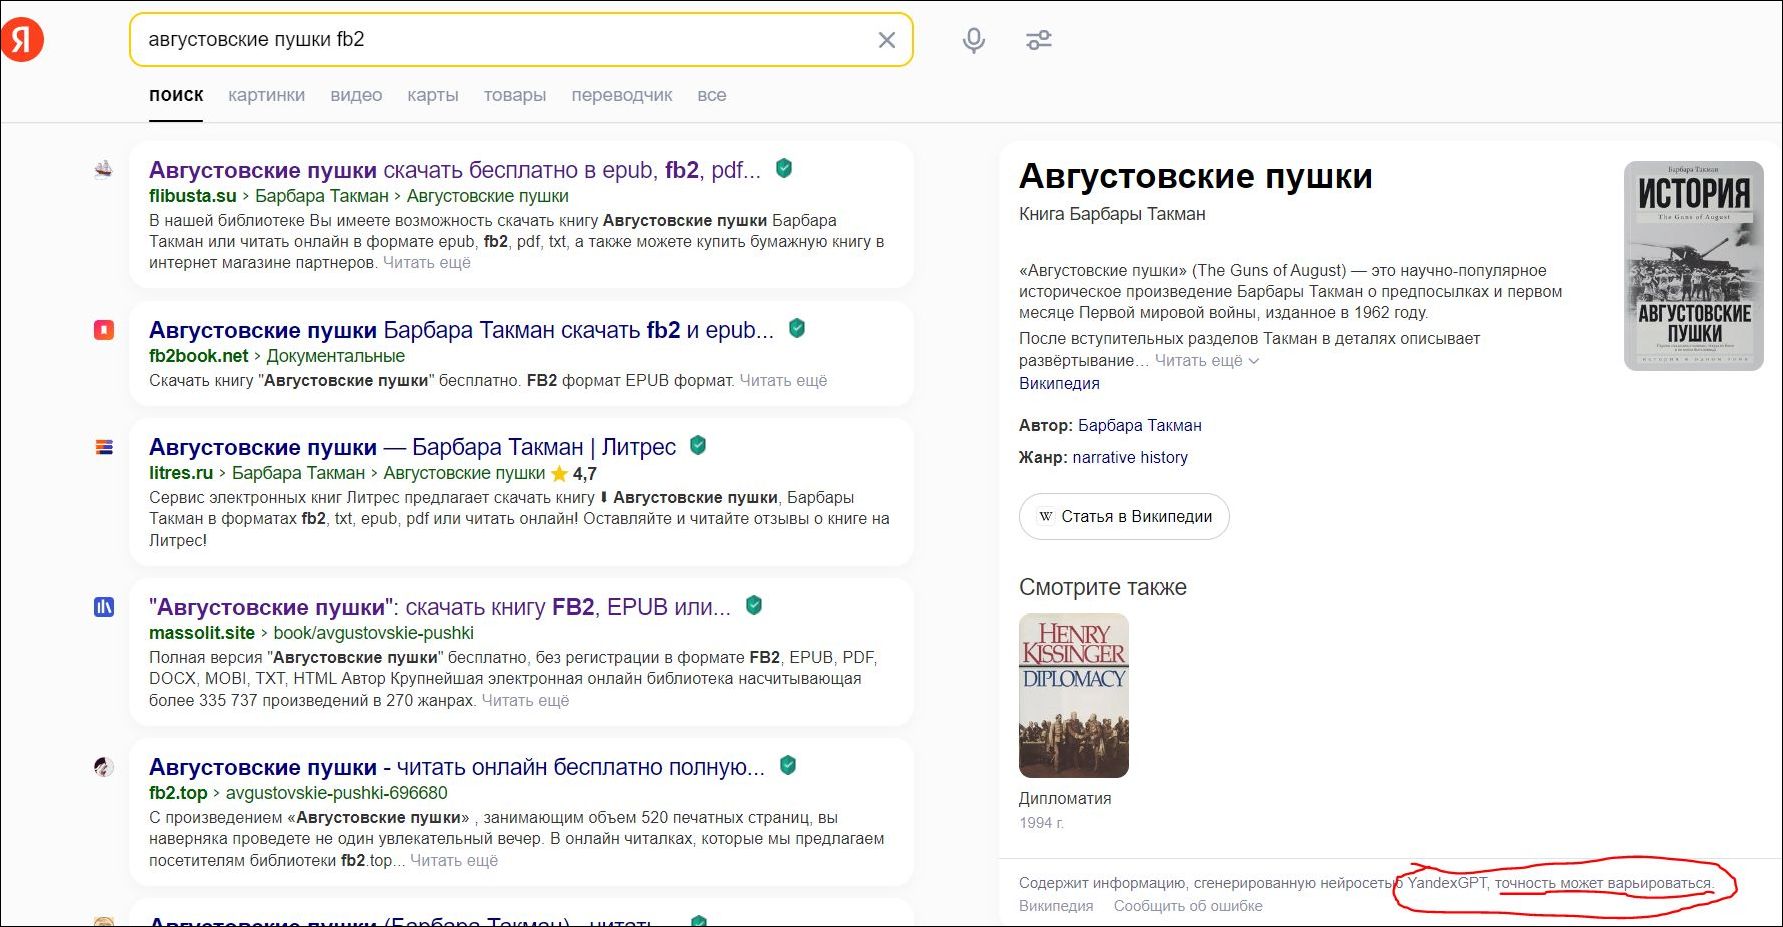 Точность может варьироваться (с) "Яндекс"